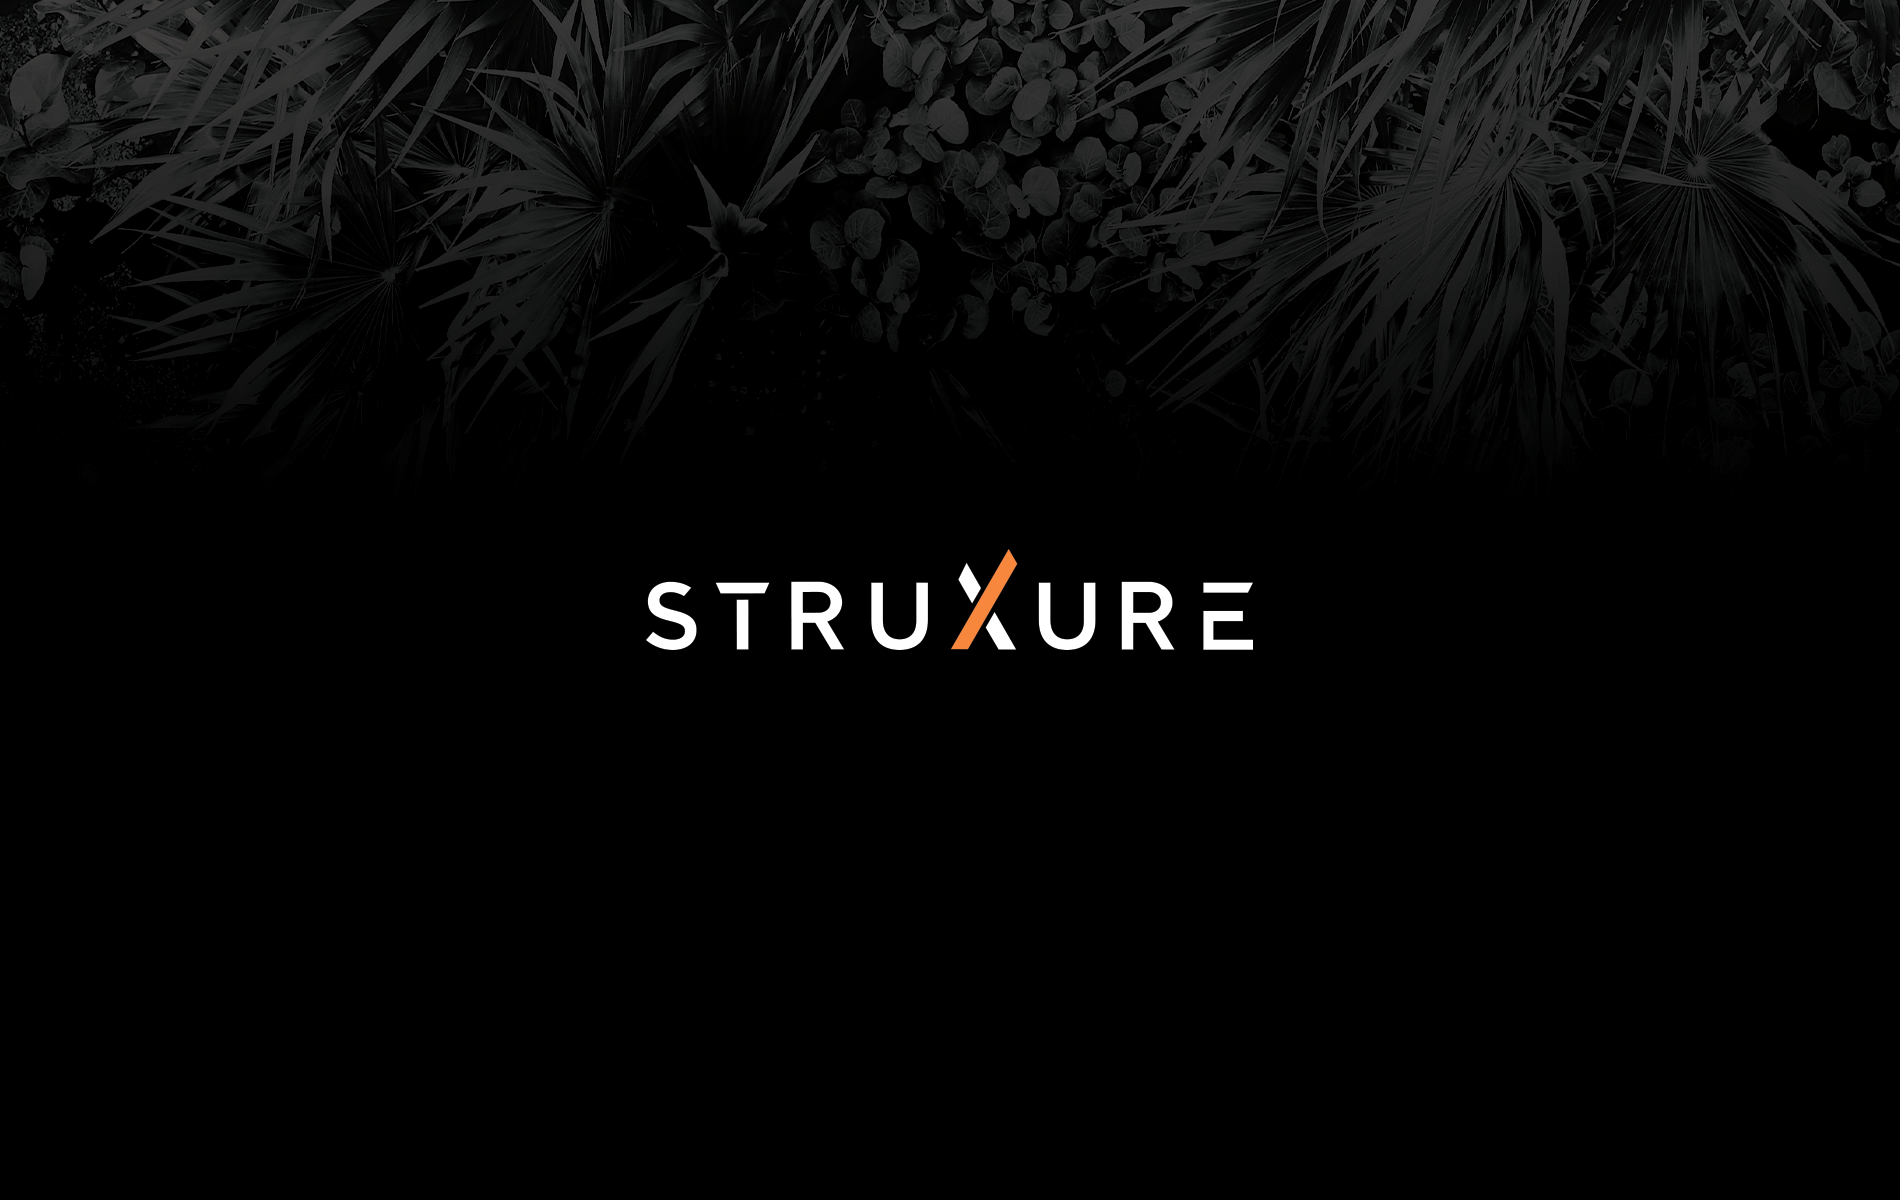 StruXure Project Launch